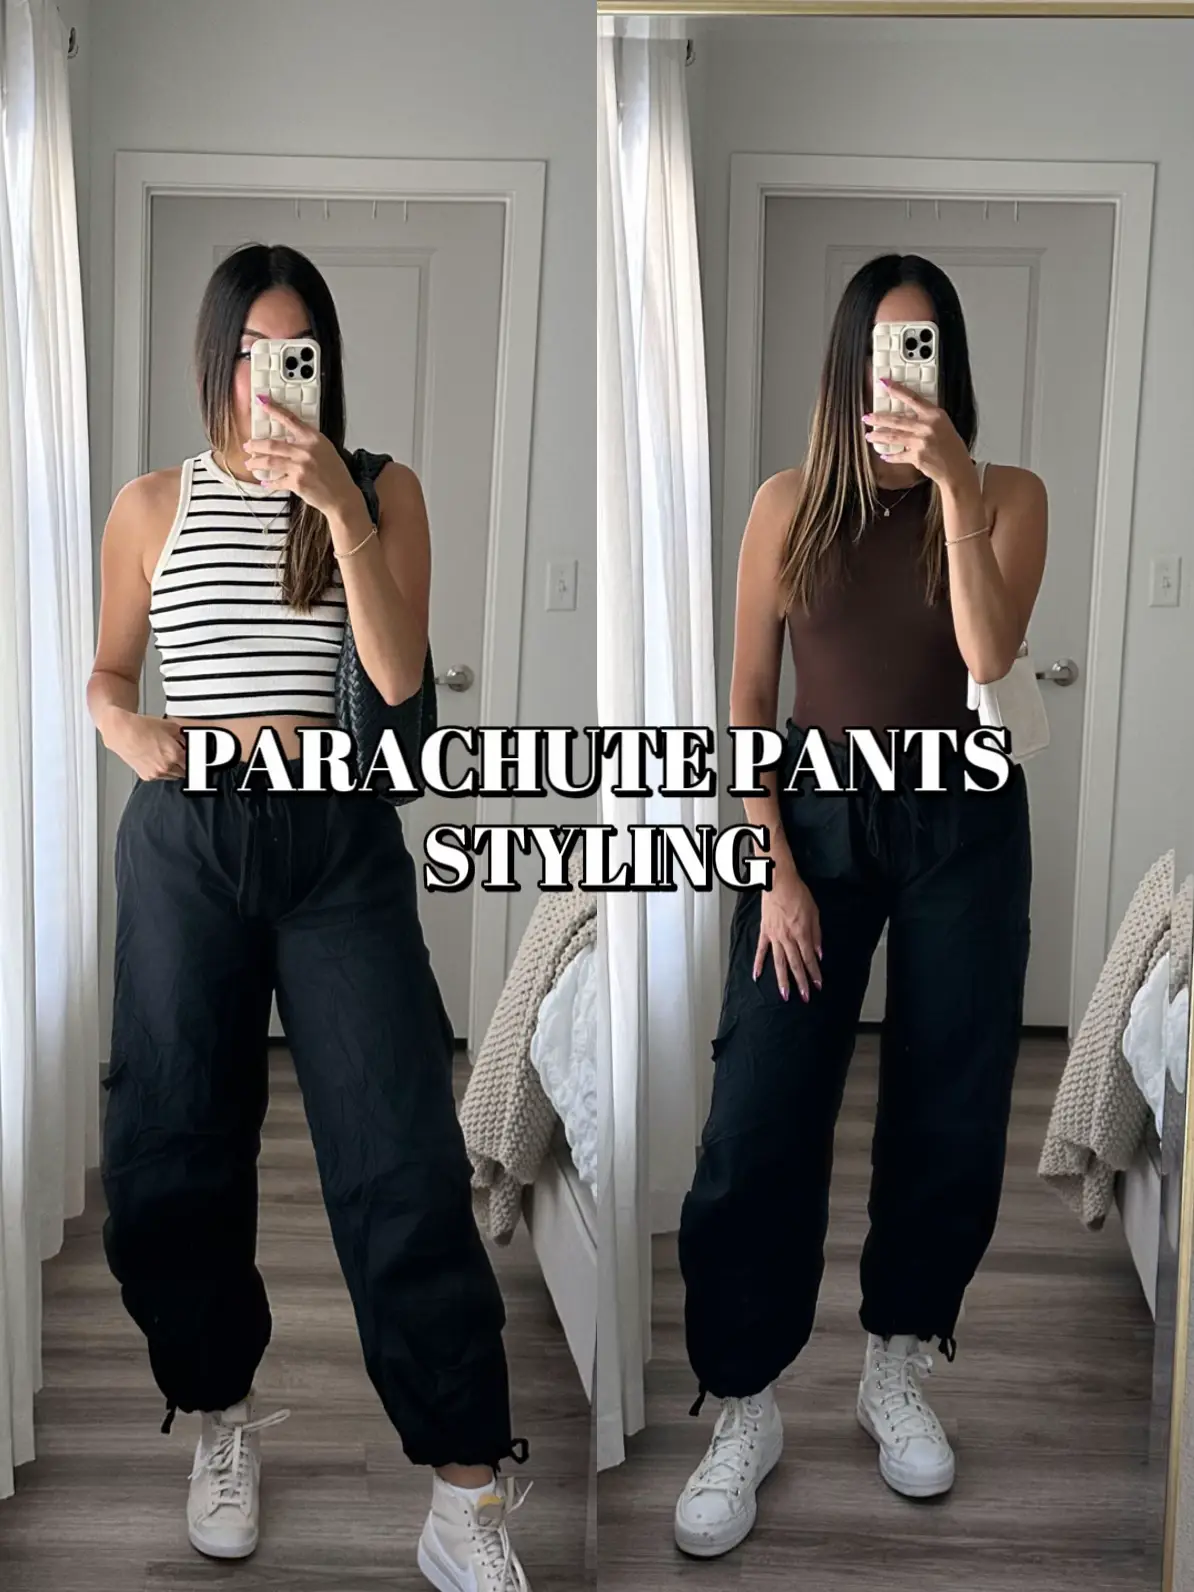 parachute pants for women - Lemon8 Search